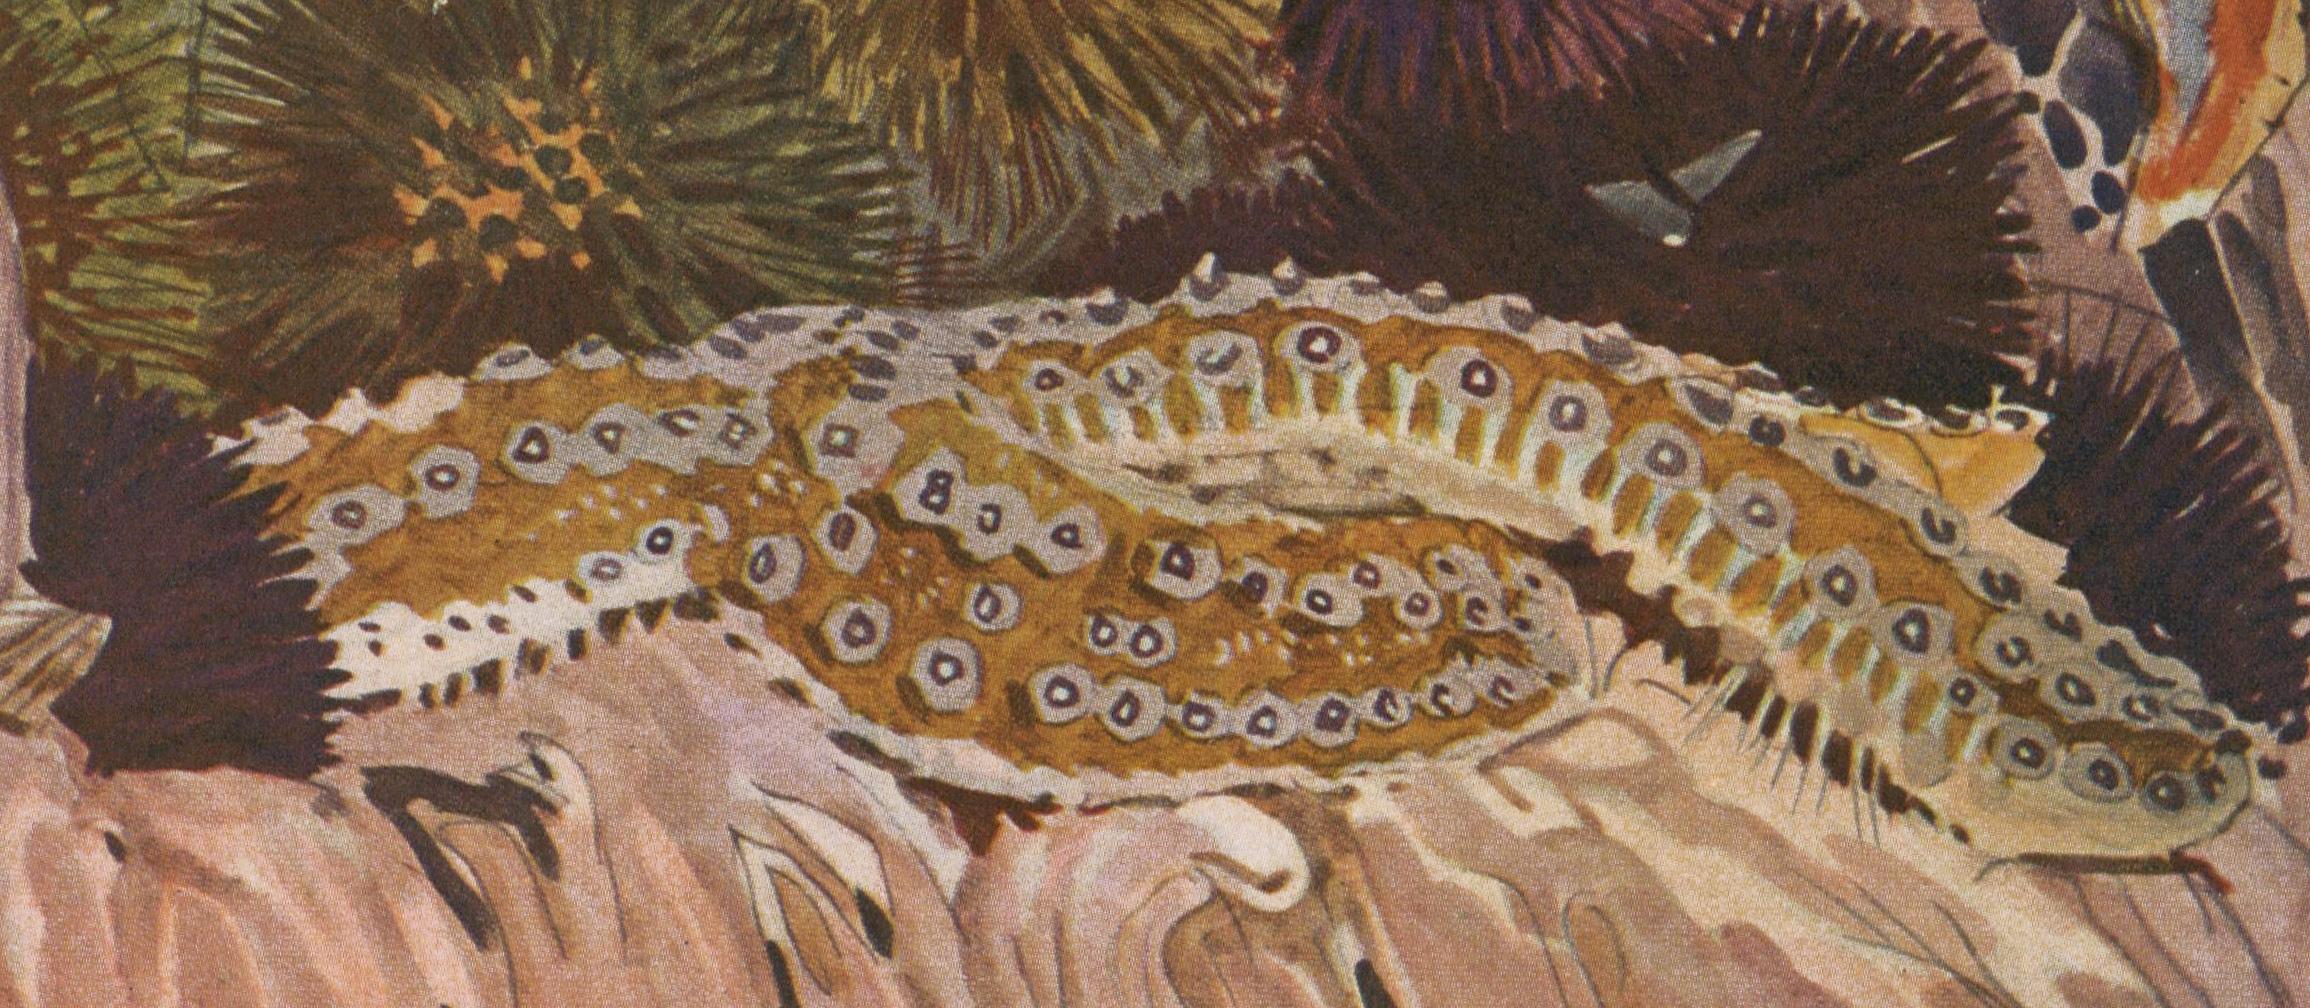 Plate number 16, Grande Etoile de mer, from 